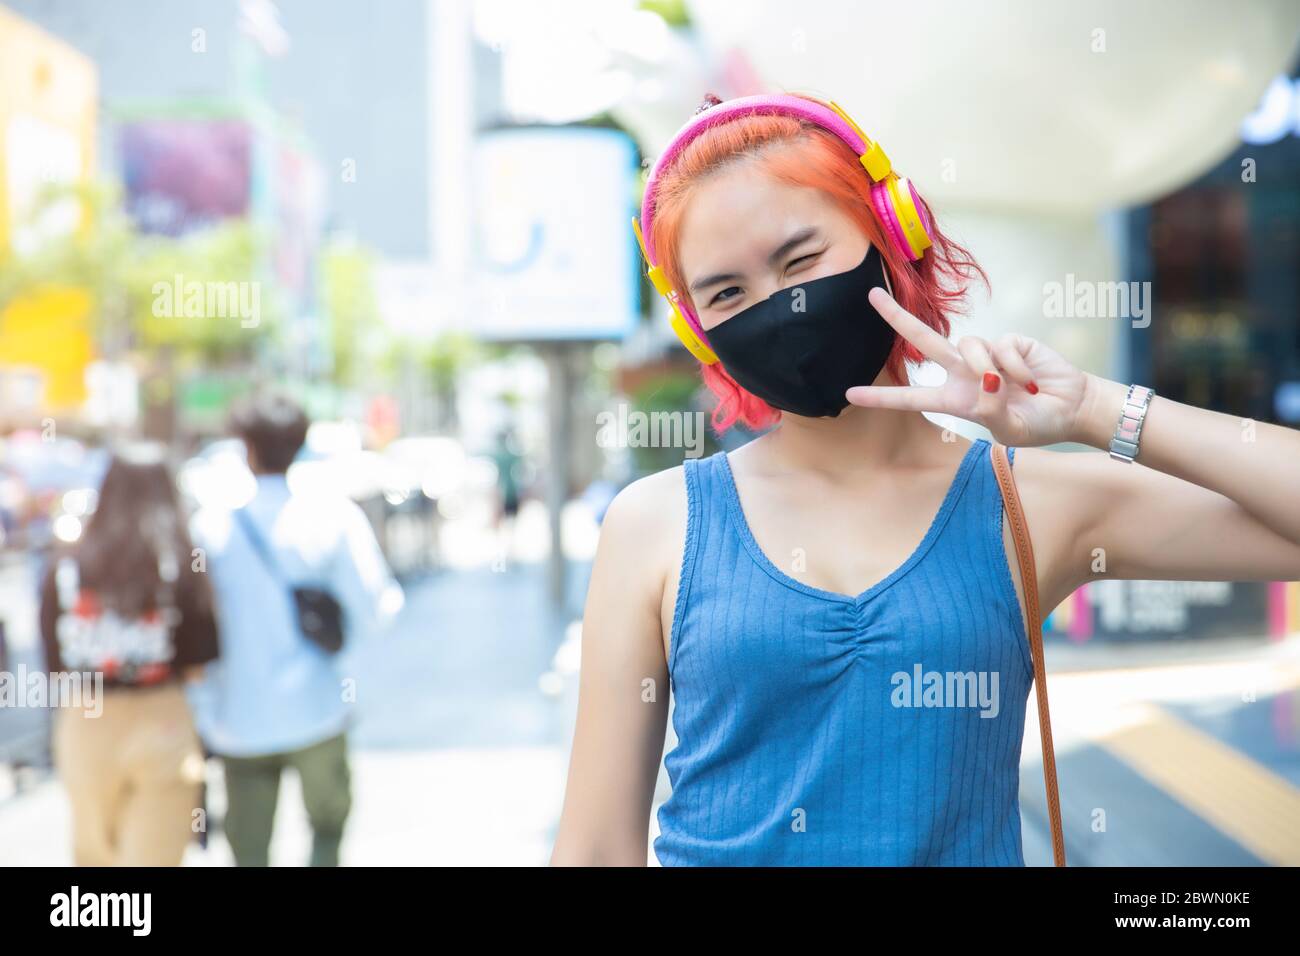 Niña adolescente lindo punk hipster estilo rojo pelo color usar máscara o máscara en el exterior de las tiendas públicas caminar calle. Foto de stock